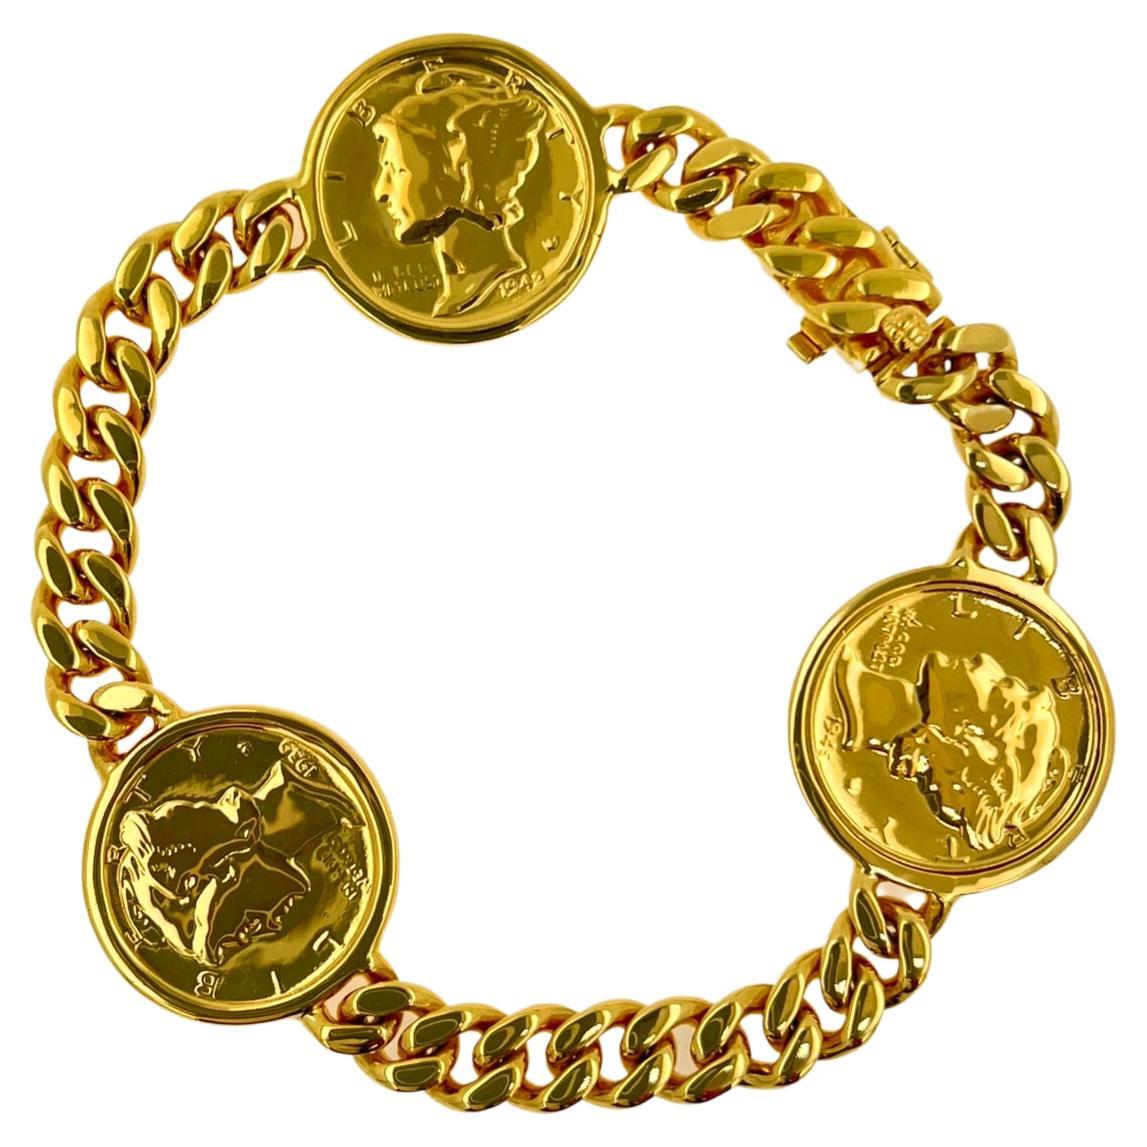 Gelbgold Vermeil Sterlingsilber Kette Armband mit Dollarmünze-Gliederarmband